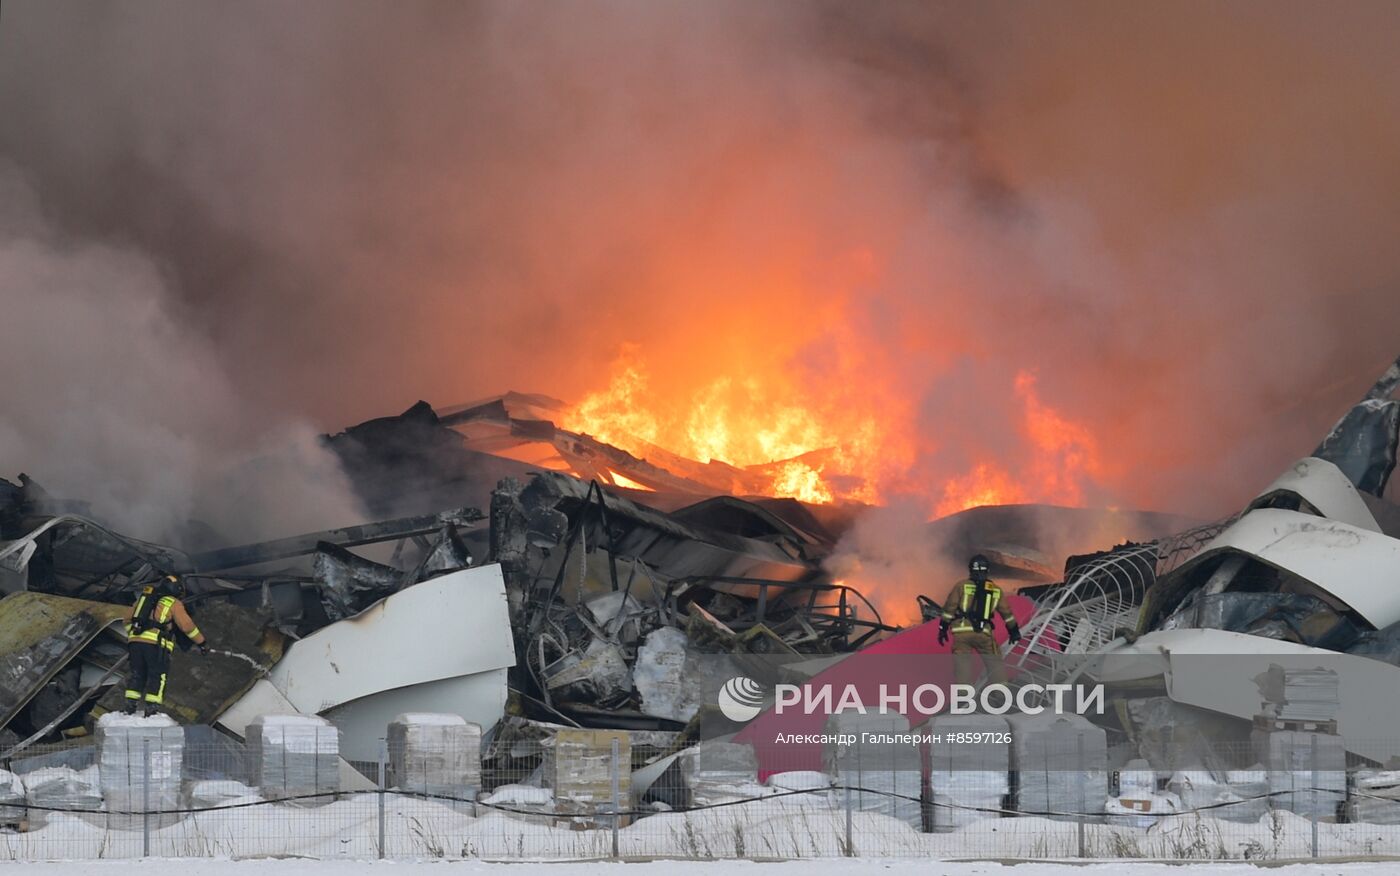 Пожар на складе Wildberries в Пушкинском районе Санкт-Петербурга